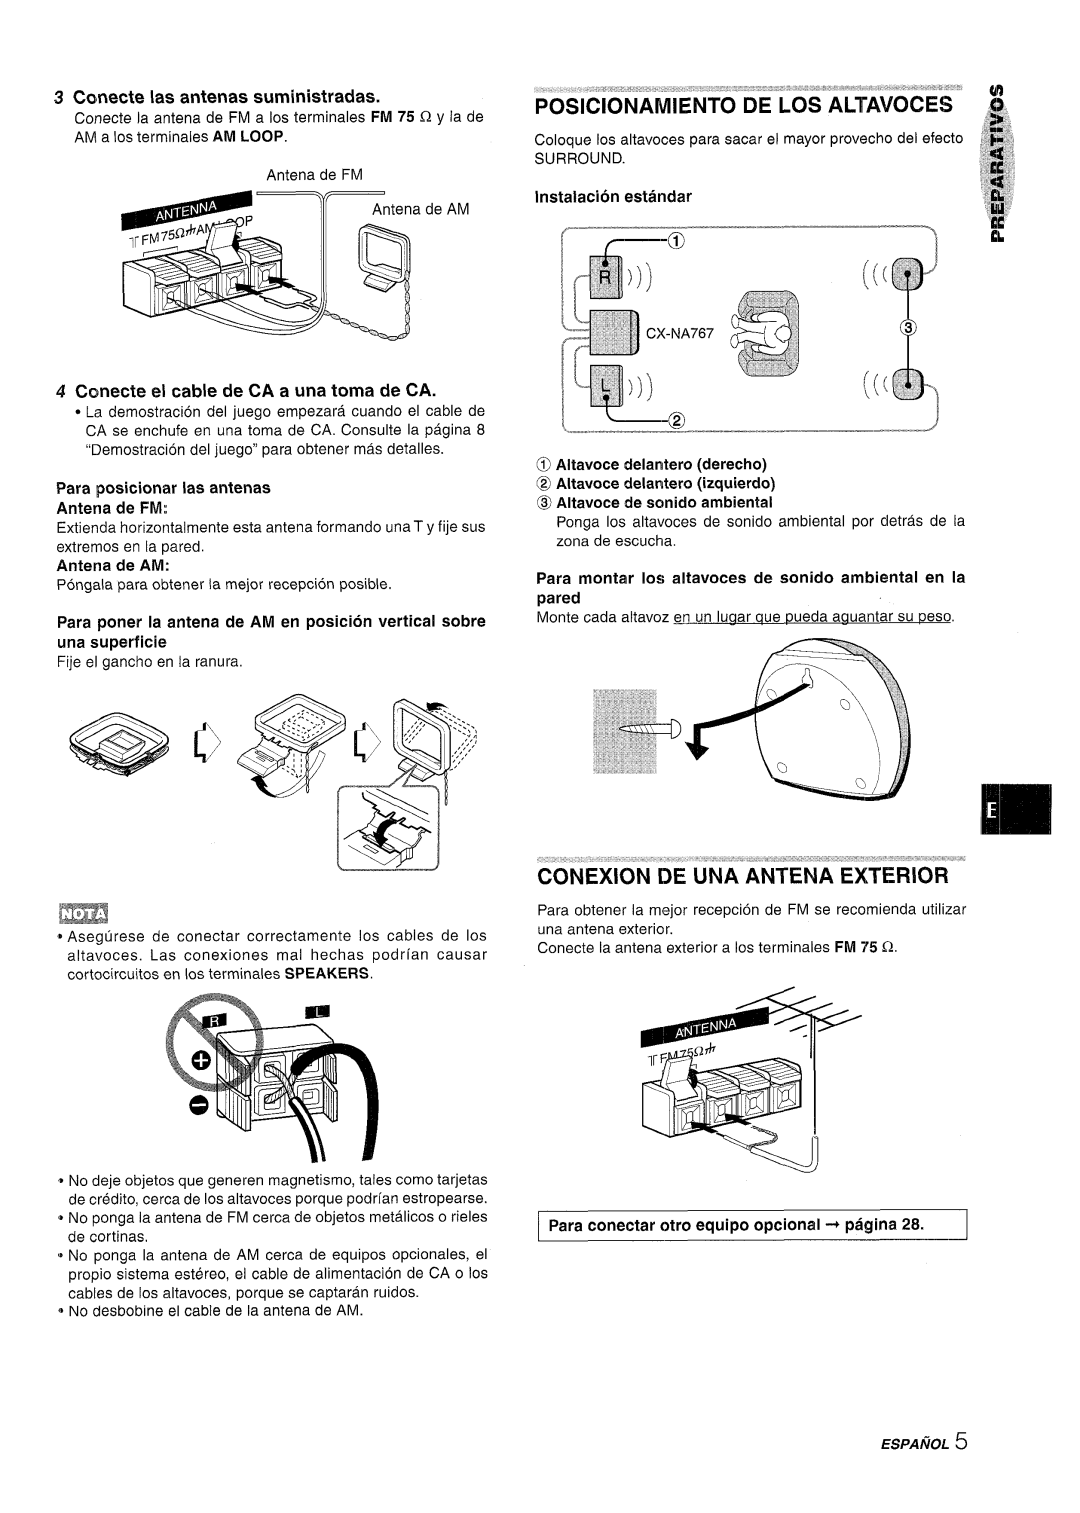 Sony NSX-A767 manual Imz3, Conecte Ias antenas suministradas, Cmecte el cable de CA a una toma de CA, Instalacion estandar 